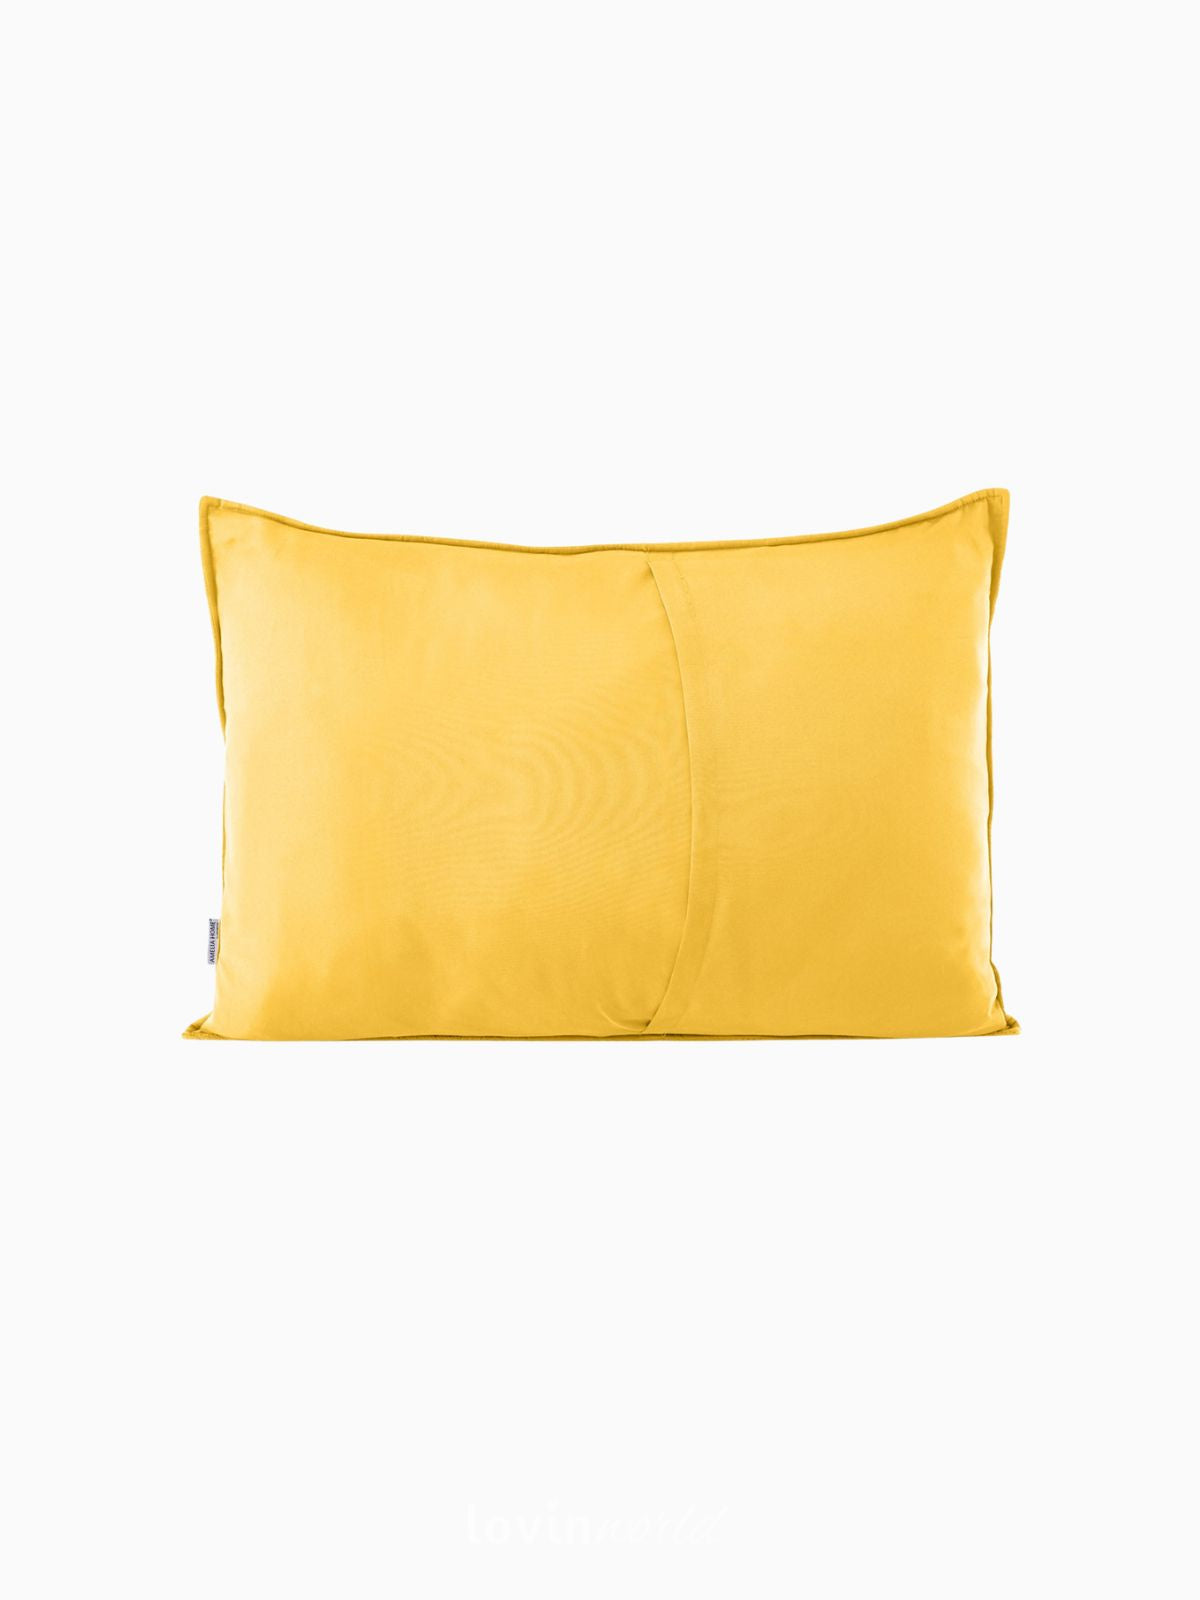 Cuscino decorativo in velluto Palsha, colore giallo 50x70 cm.-2